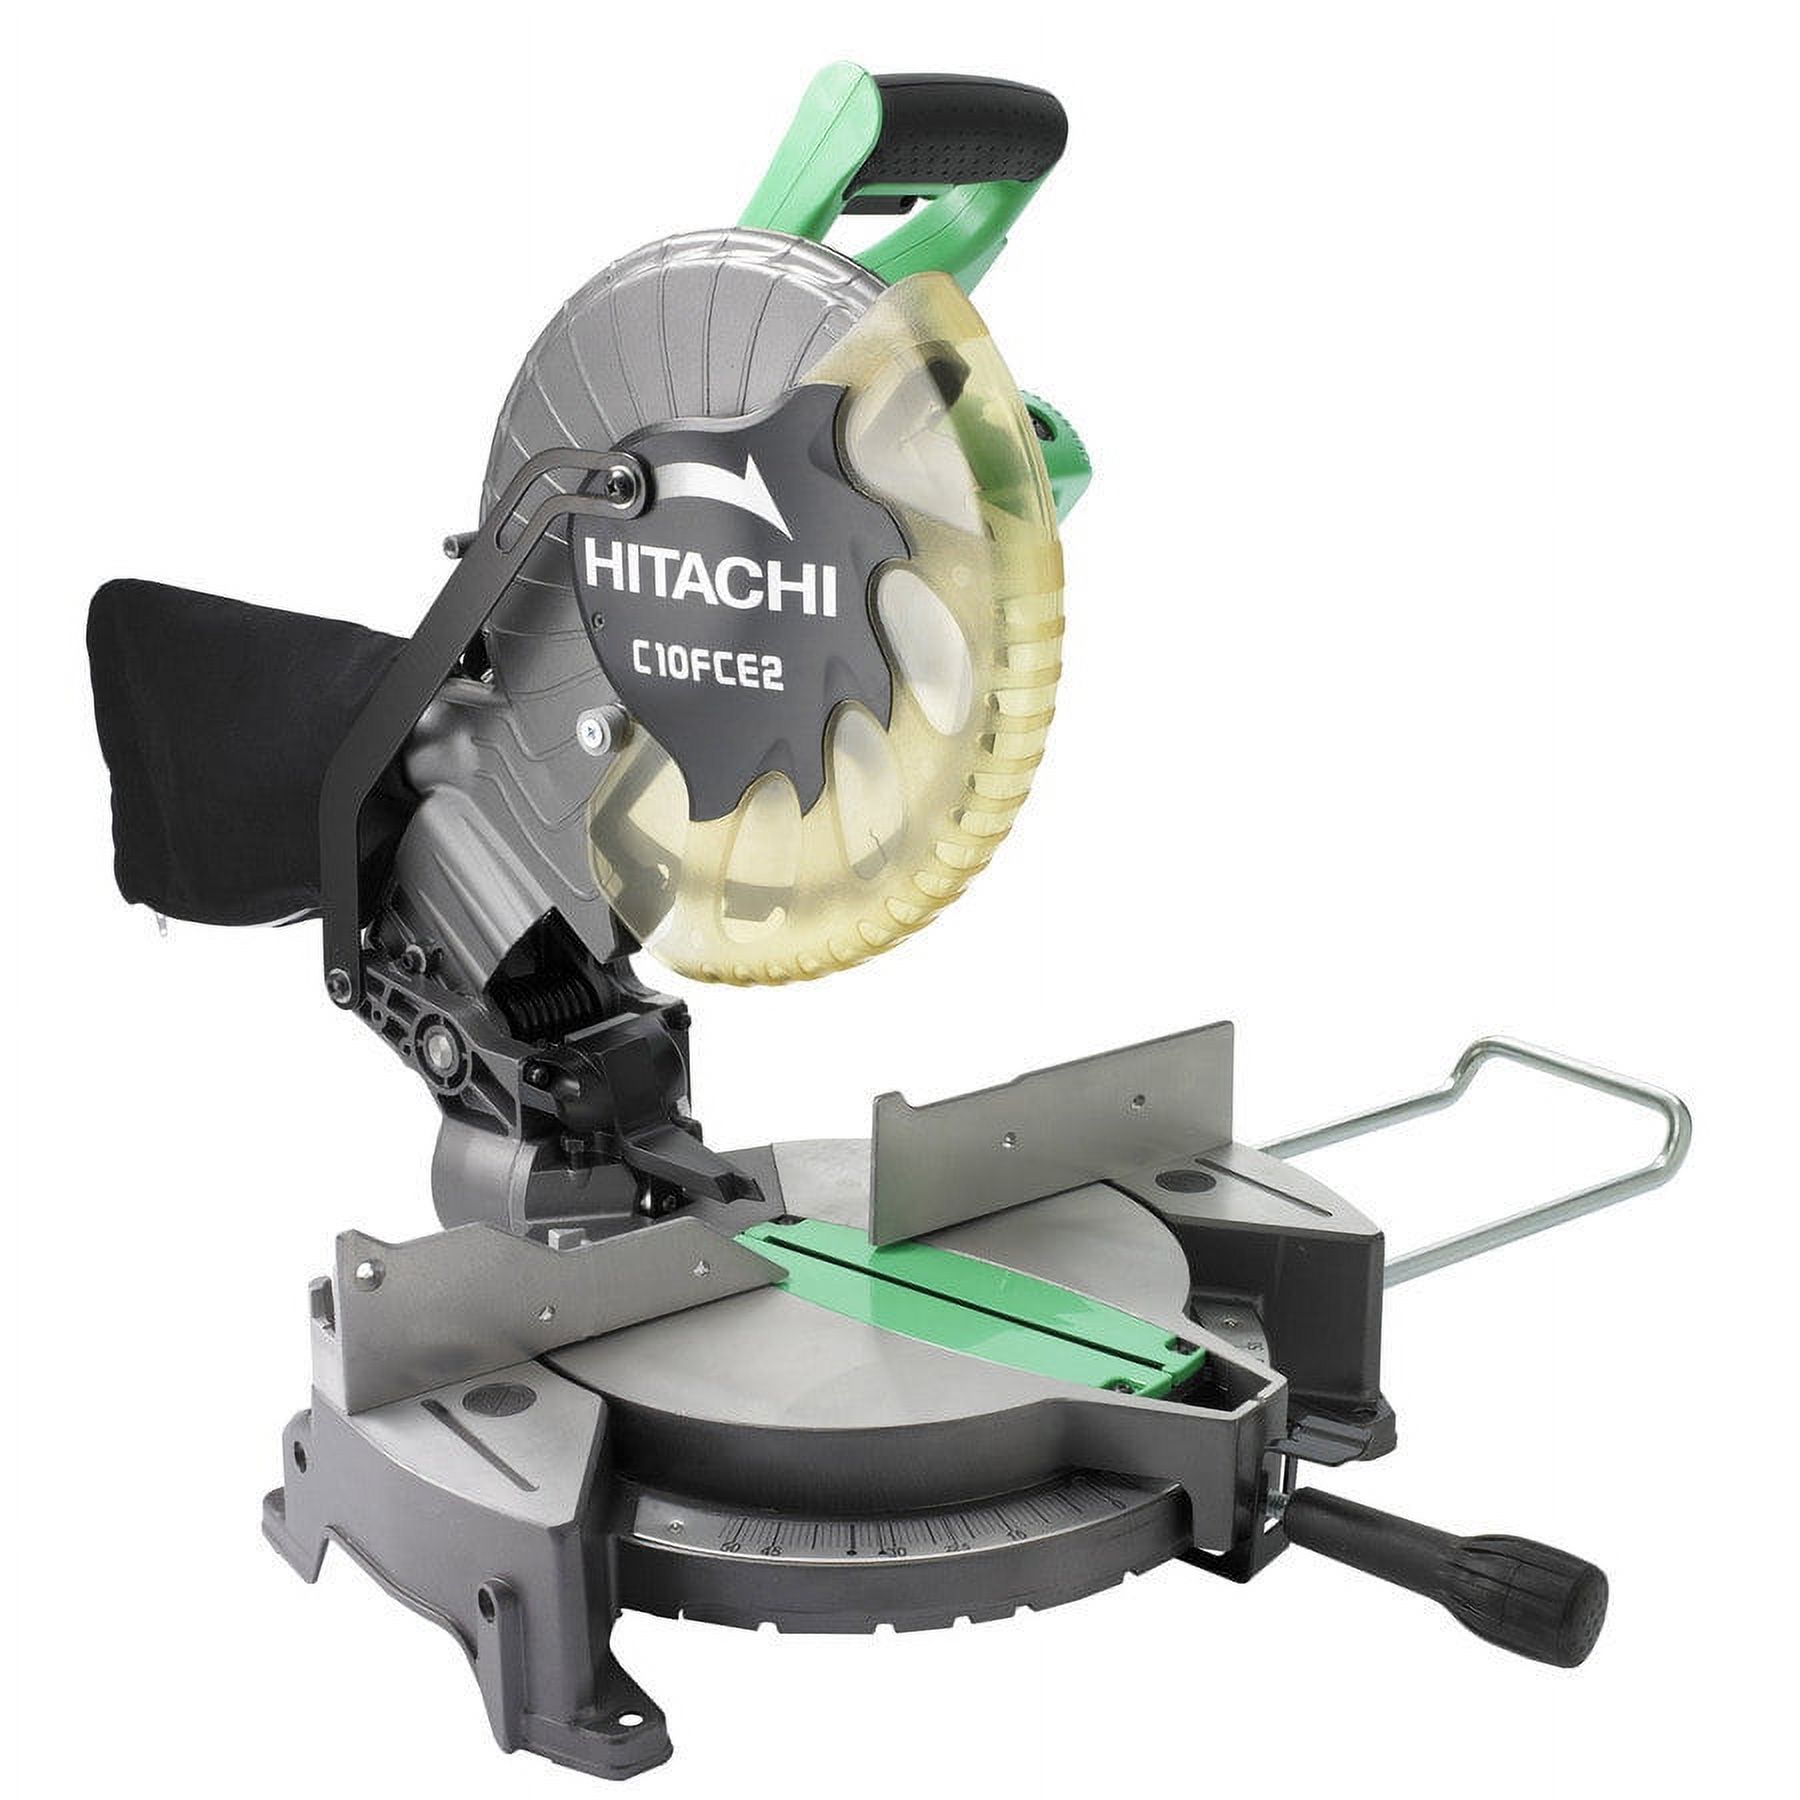 Hitachi C10FCE2 Compound Corded Miter Saw, 120 VAC, 15 A, 10 in Dia, 5000 rpm - image 5 of 5